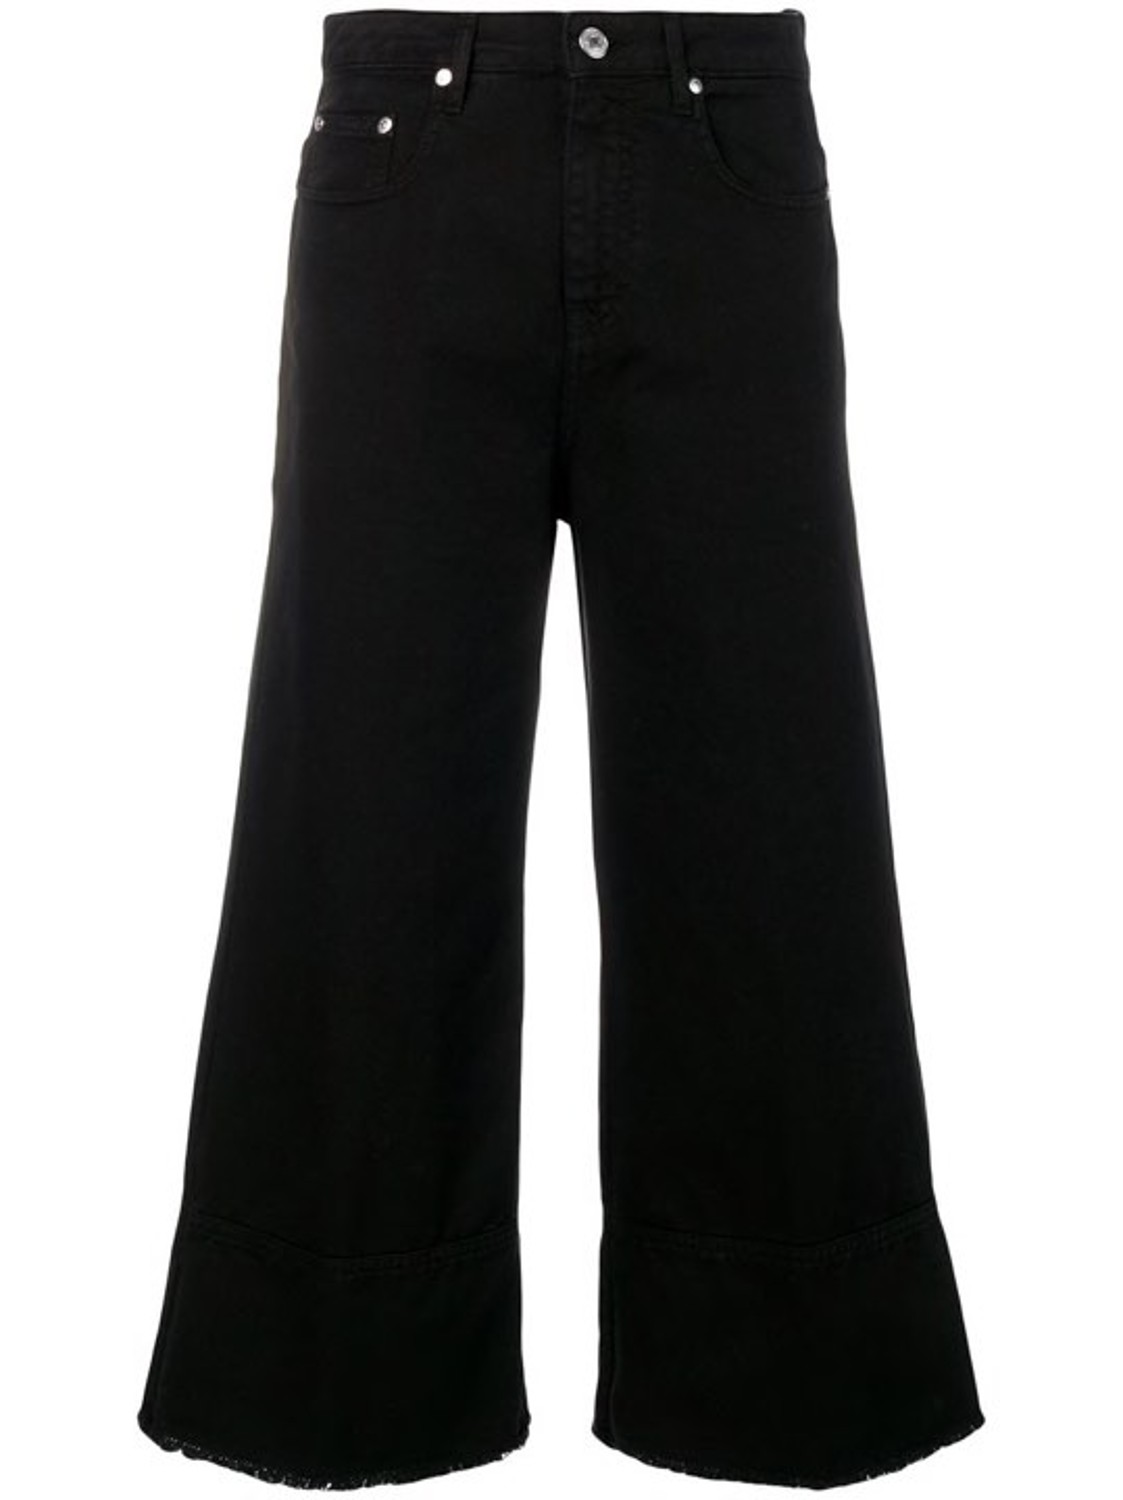 shop MSGM Saldi Pantaloni: Pantalone MSGM, modello jeans, cropped, in colore nero, 4 tasche, sfrangiato infondo, vita alta.

Composizione: 100% cotone. number 1472